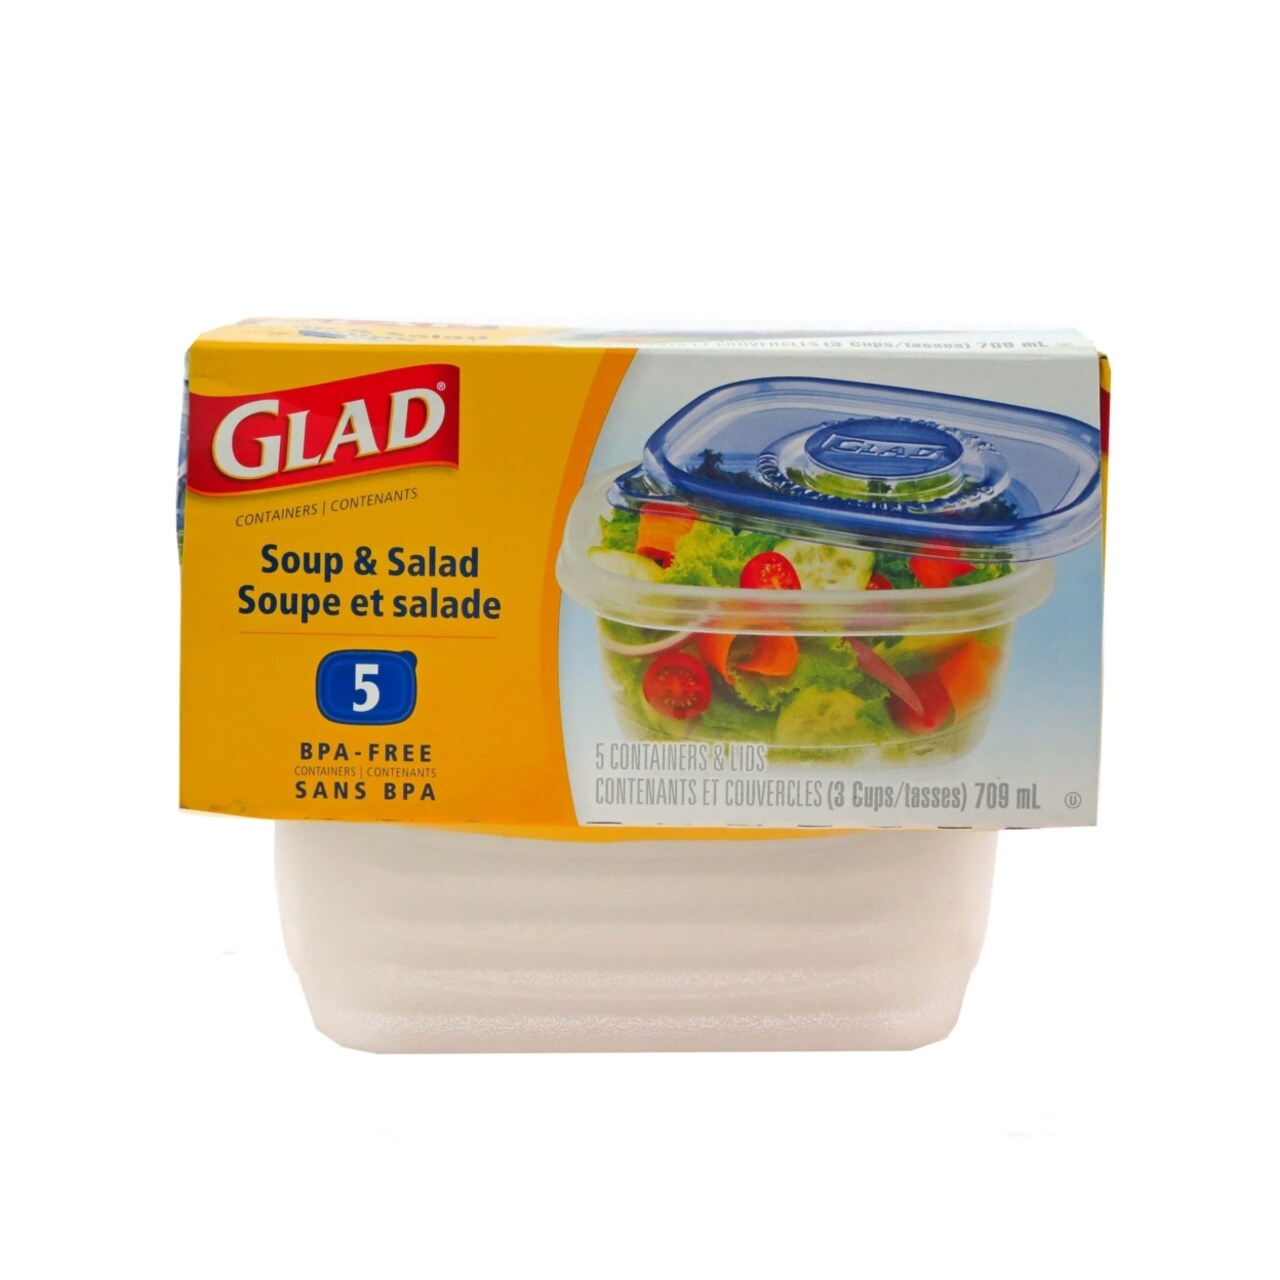 Glad SoupandSalad M size, 5 containers